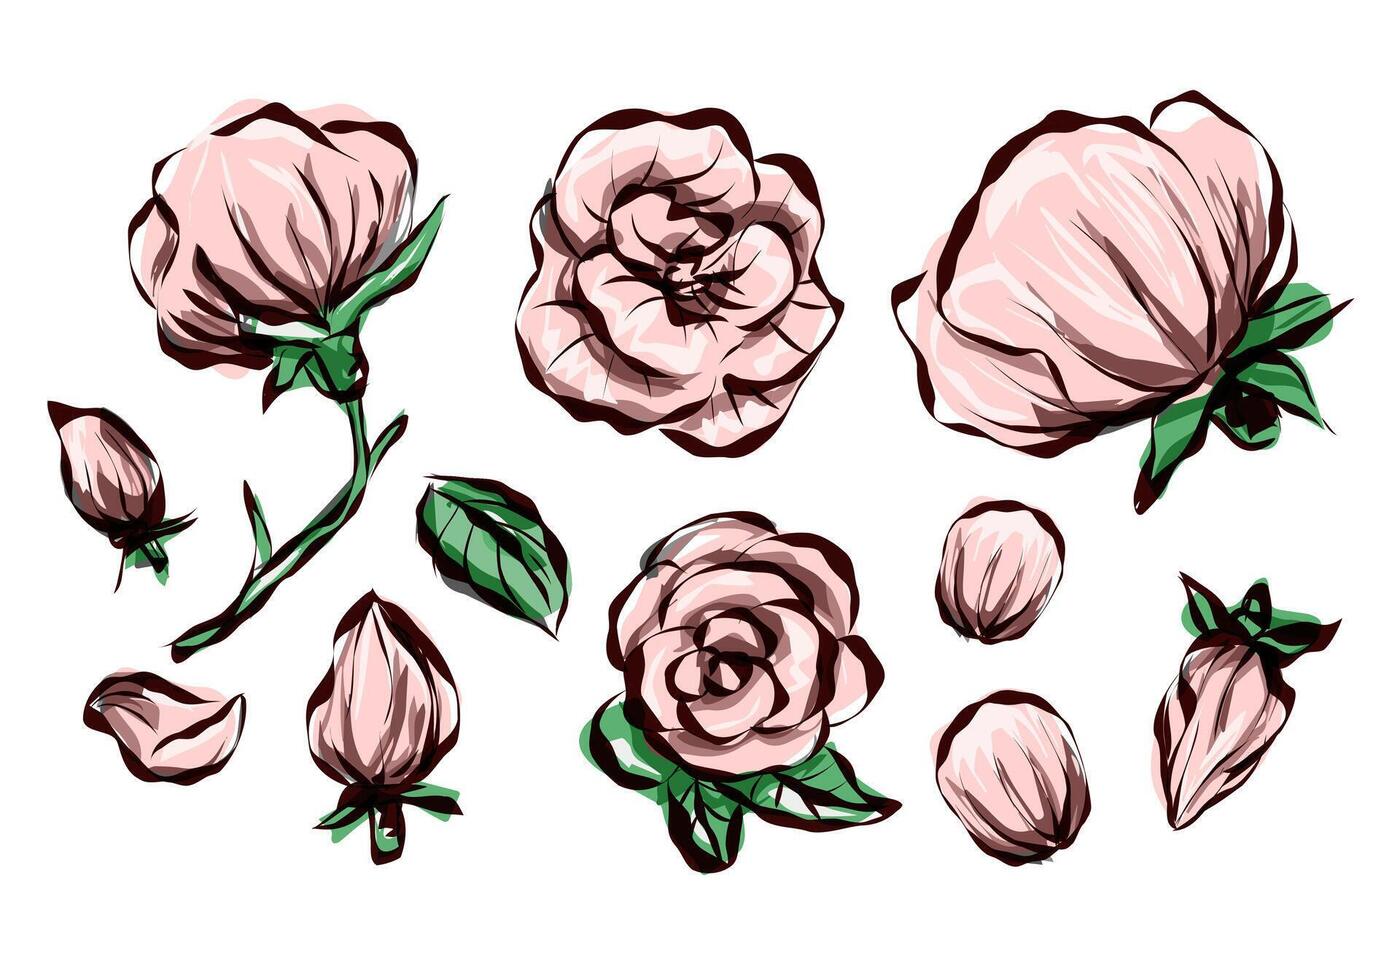 Jahrgang Rose Blumen auf Weiß Hintergrund. Blumen- Sammlung von Karikatur Vektor detailliert Hand gezeichnet Rosen. Vektor Illustration.